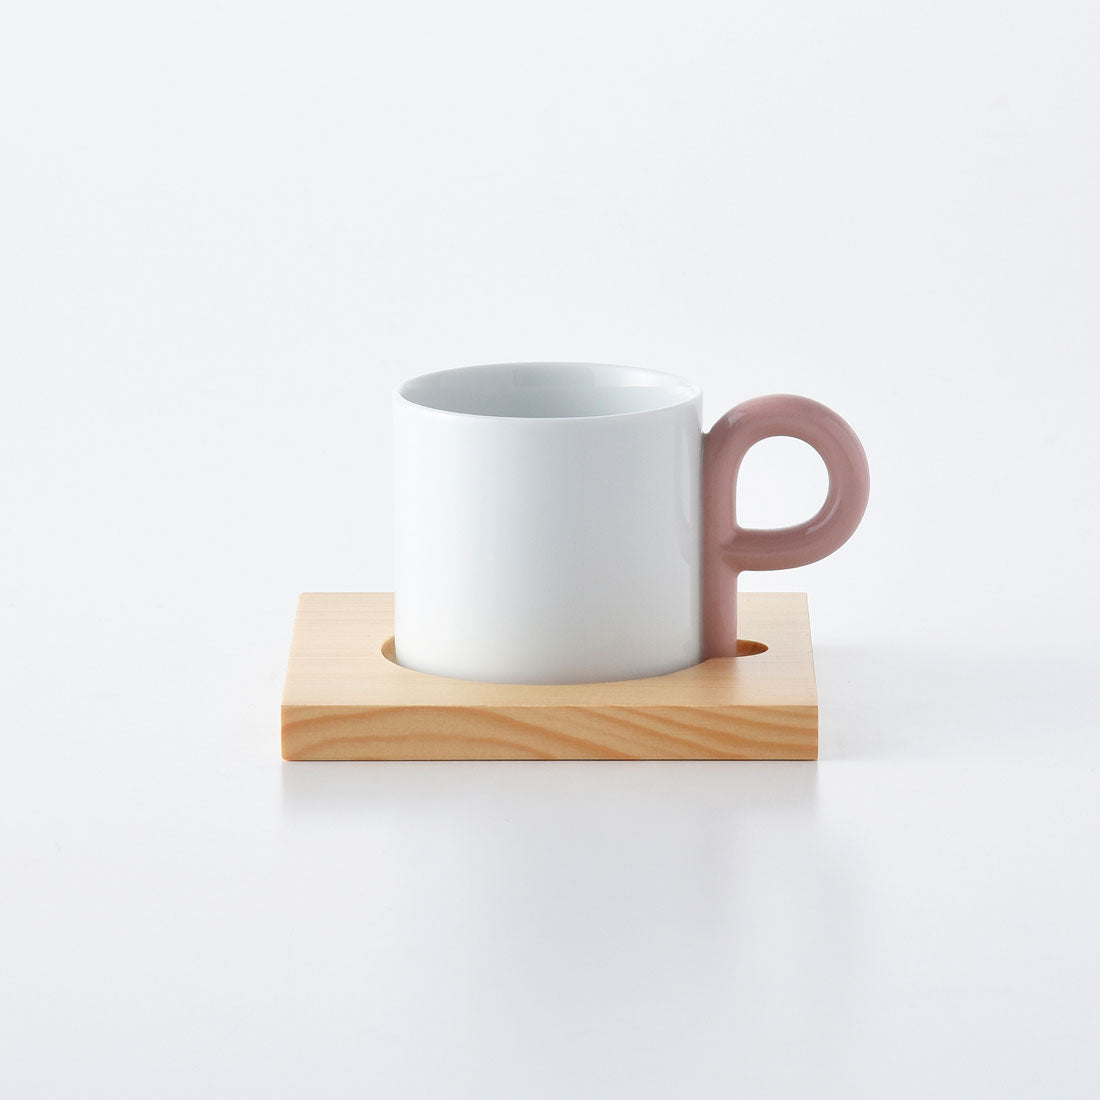 P型コーヒーシリーズ コーヒーカップ&ソーサー ピンク ｜ 白山陶器 